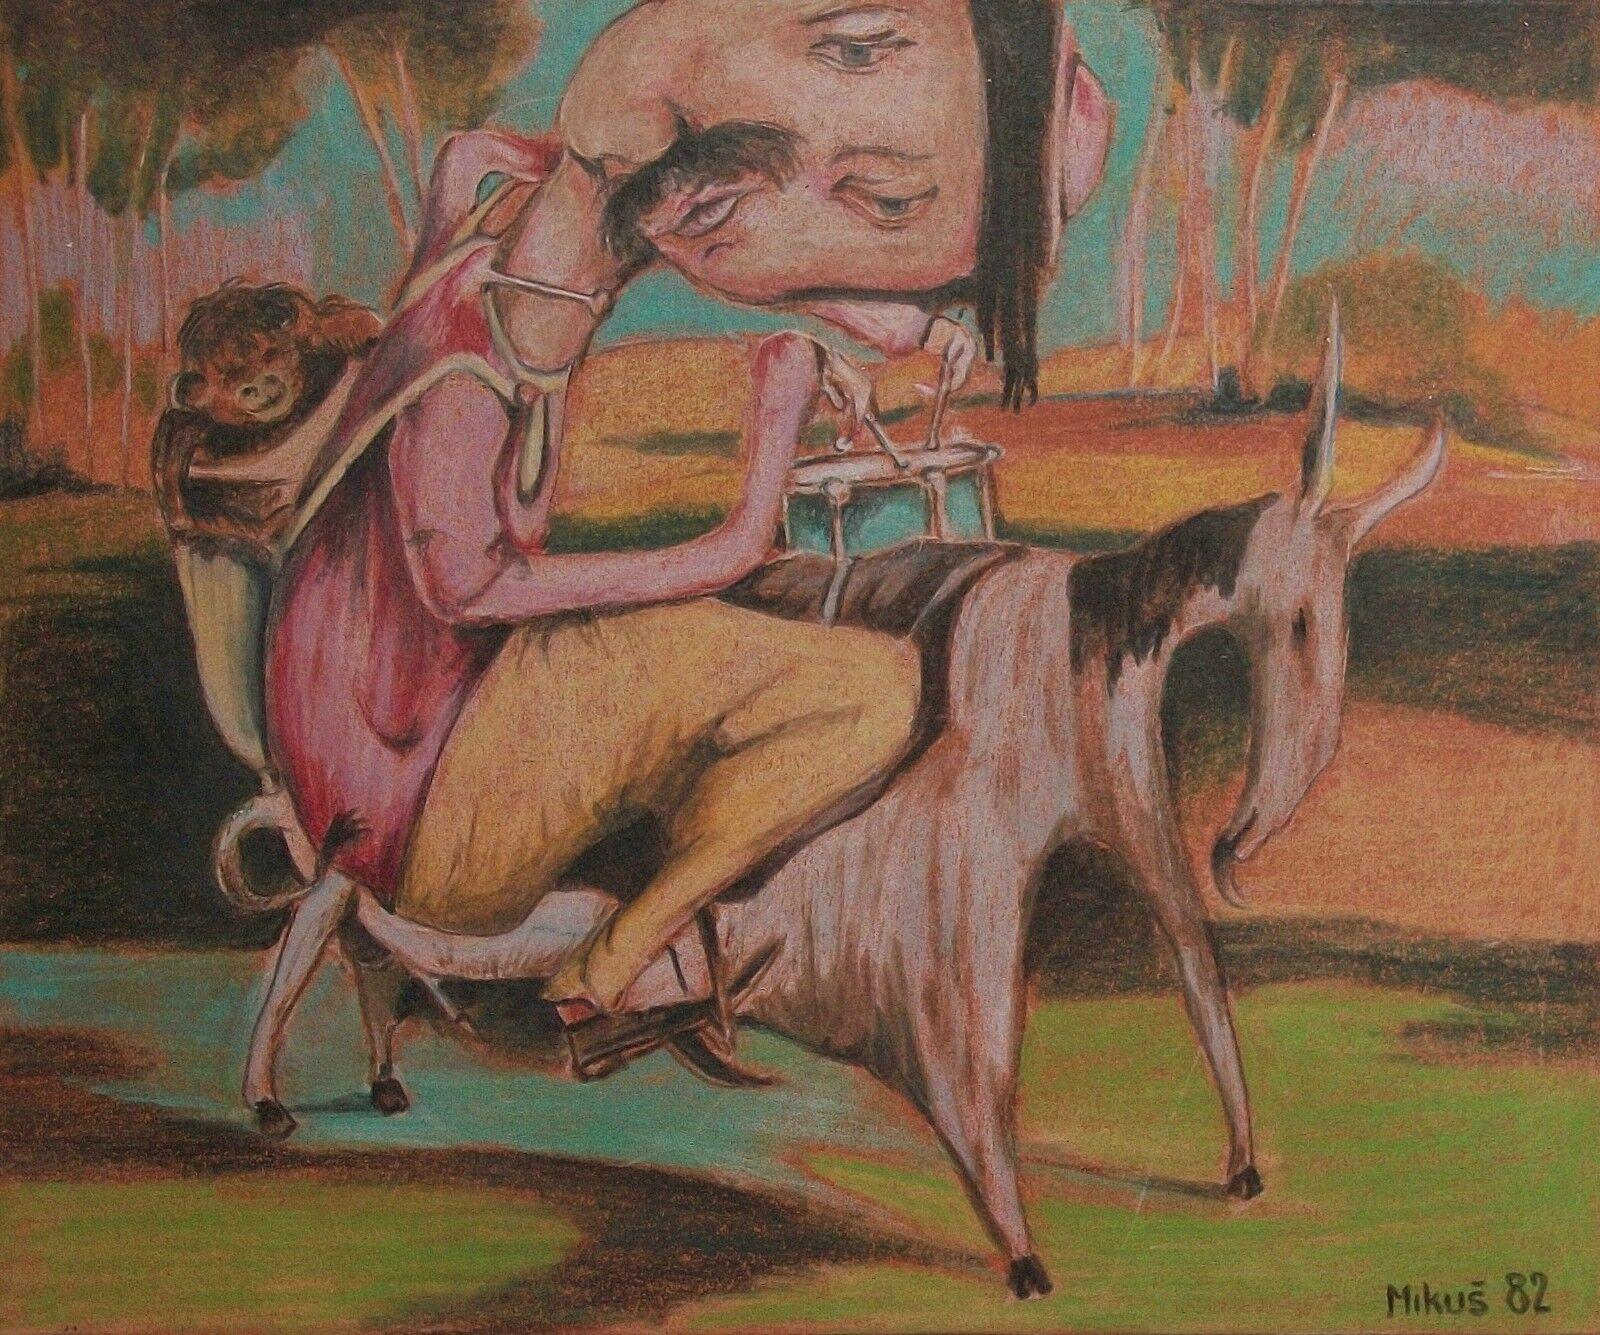 MIKUŠ - 'Monkey On My Back' - Surrealistische Farbstift- und Graphitzeichnung auf Papier - signiert und datiert mit Bleistift unten rechts - ungerahmt - Tschechoslowakei - um 1982. 

Ausgezeichneter Vintage-Zustand - kein Verlust - keine